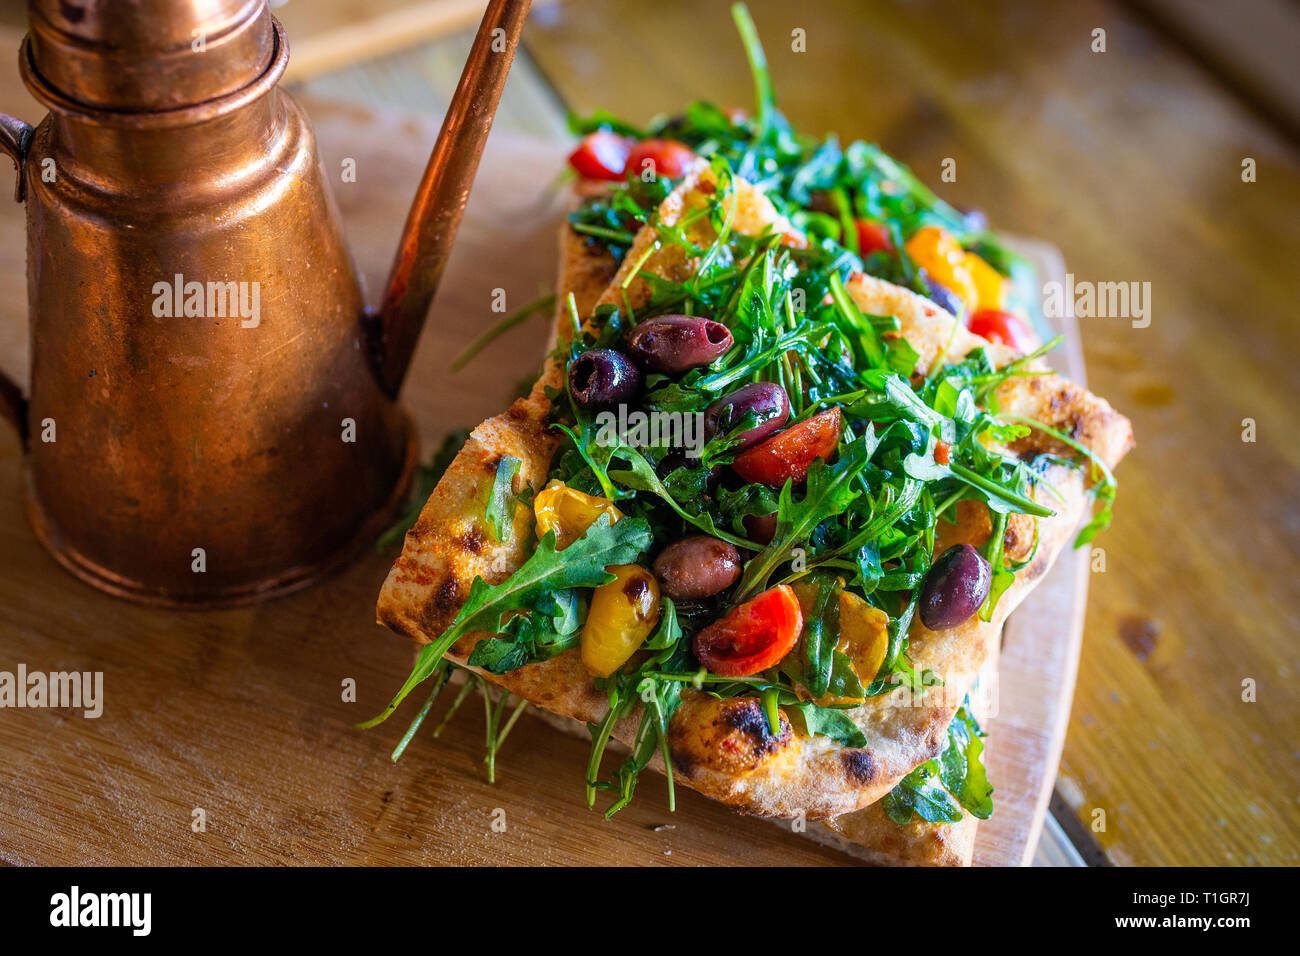 Authentische italienische römischen Stil vegane pizza Slices auf einer Holzplatte in einer Pizzeria Trattoria Restaurant. Italienische Street Food Stockfoto